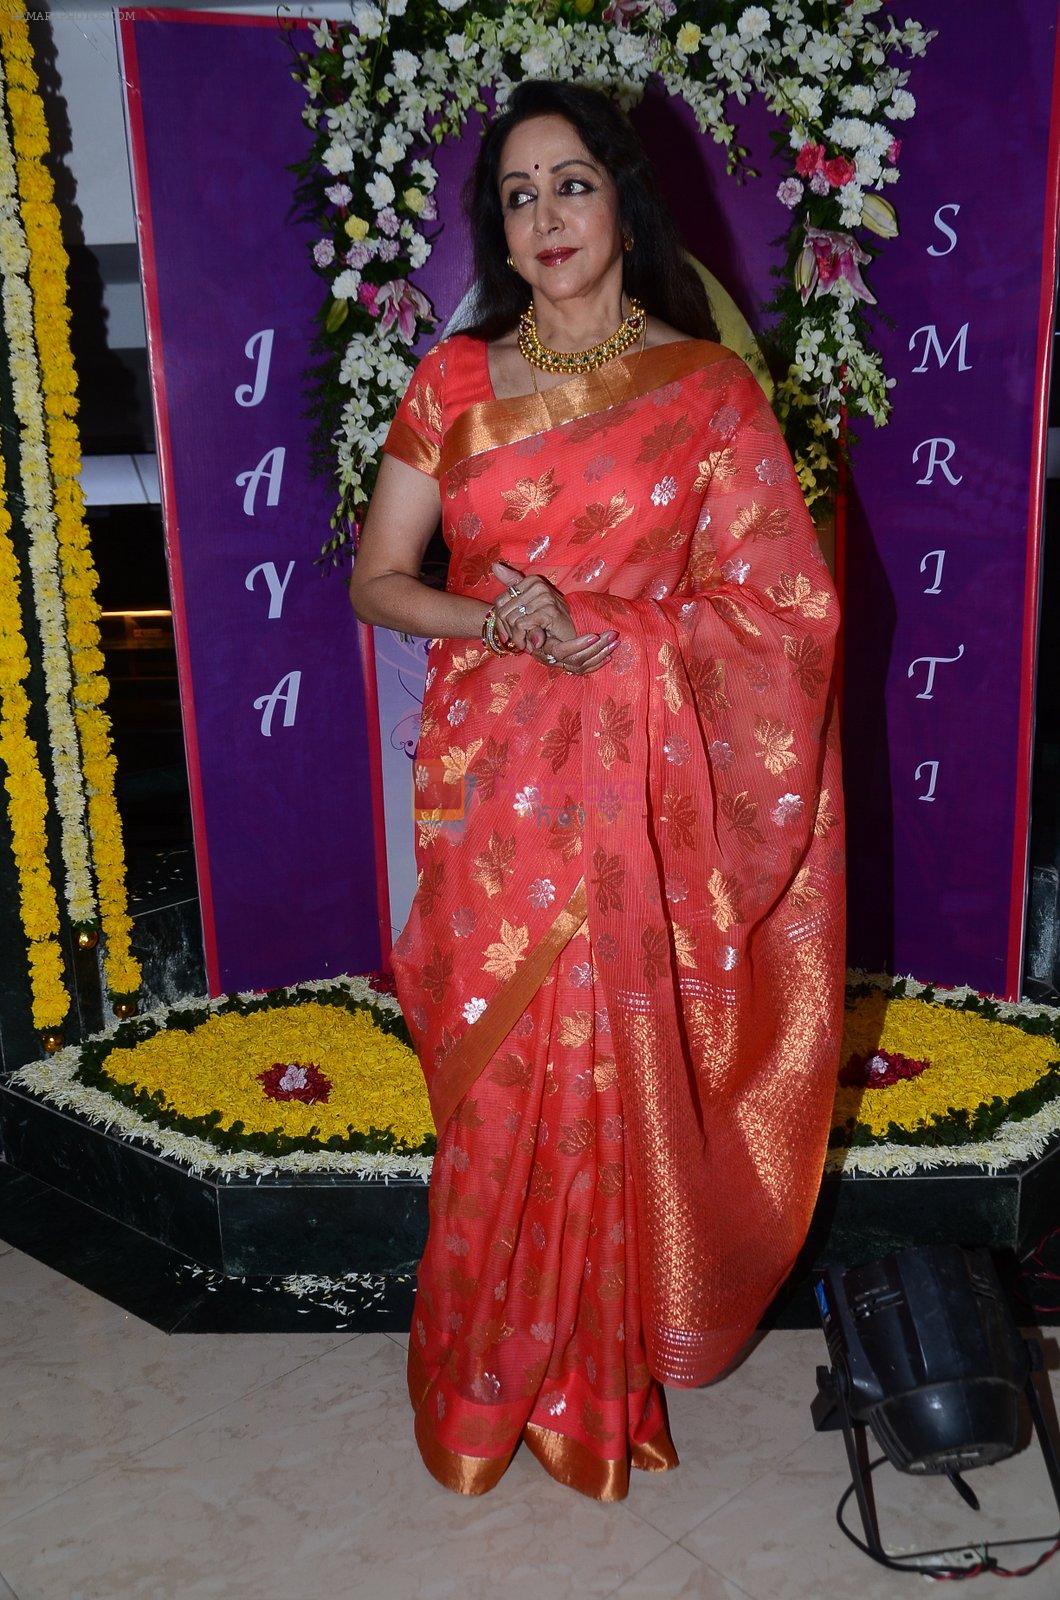 Hema Malini at Jaya Smriti show on 15th Nov 2015